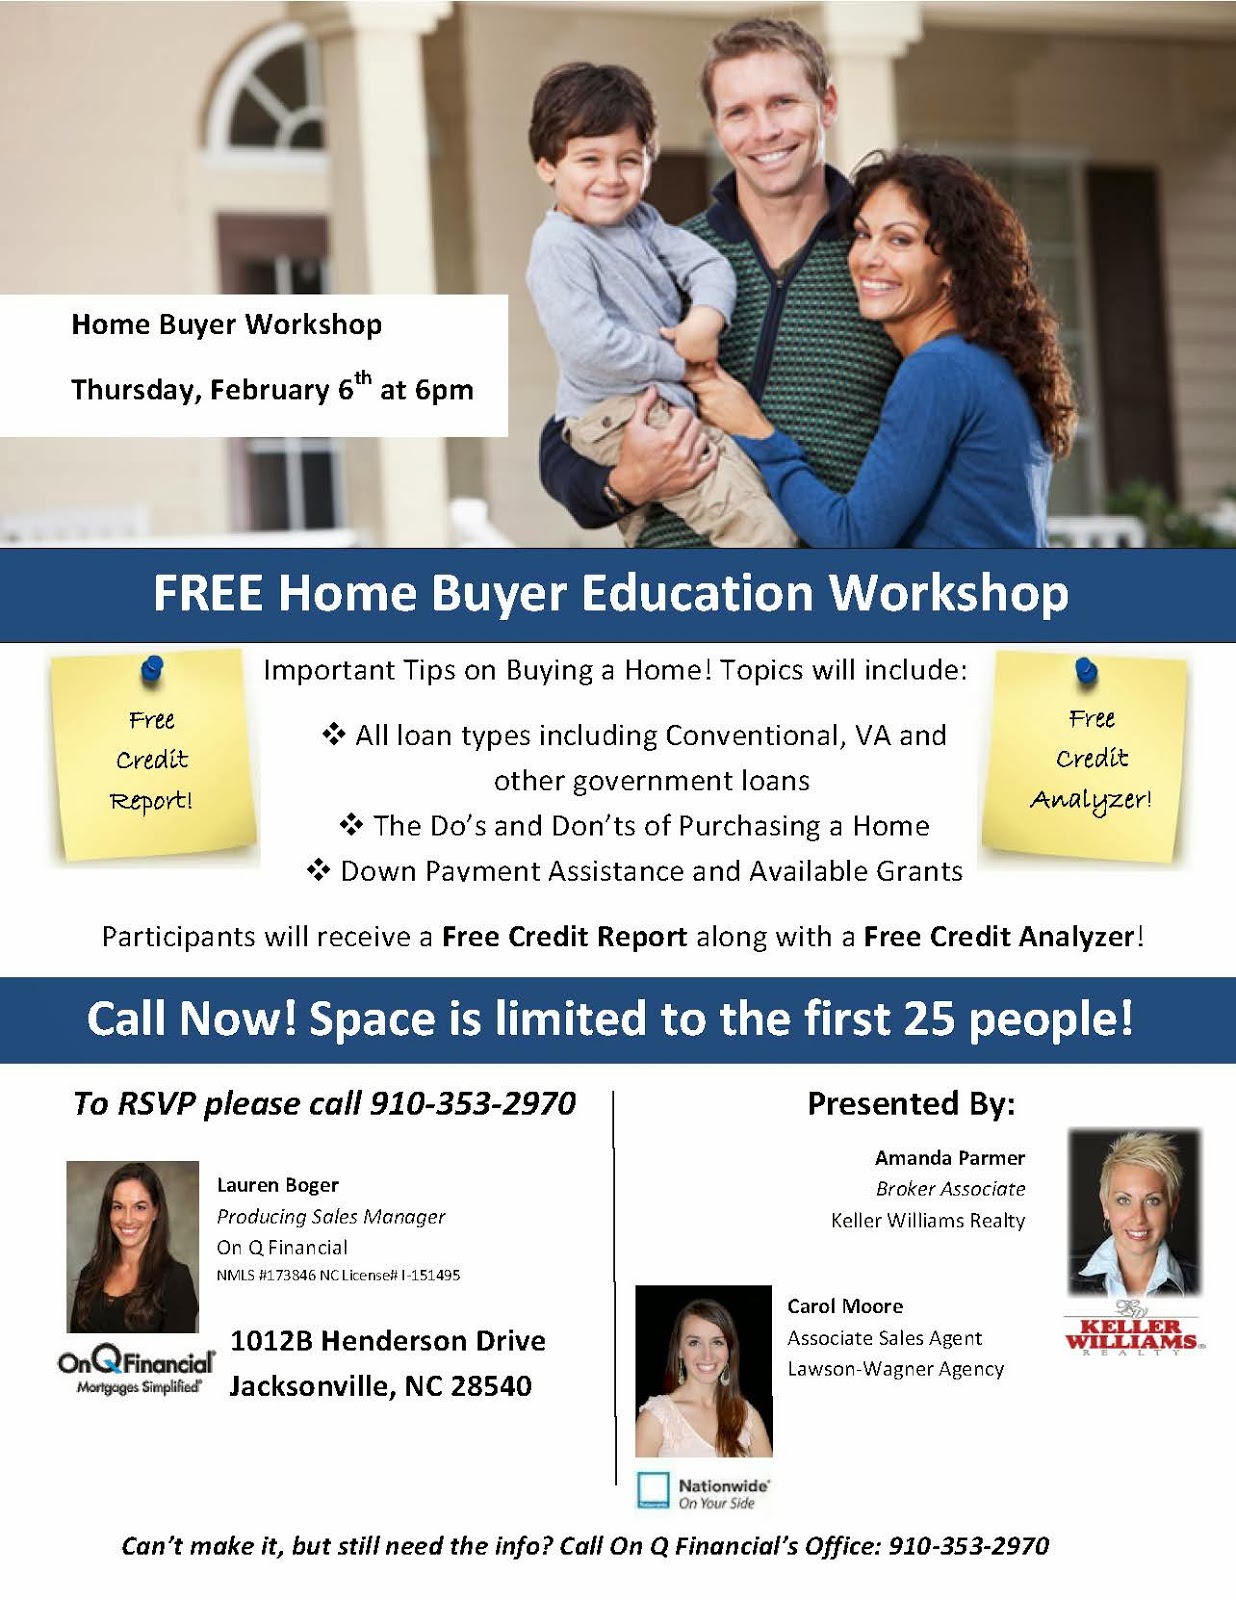  Home Buyer Workshop